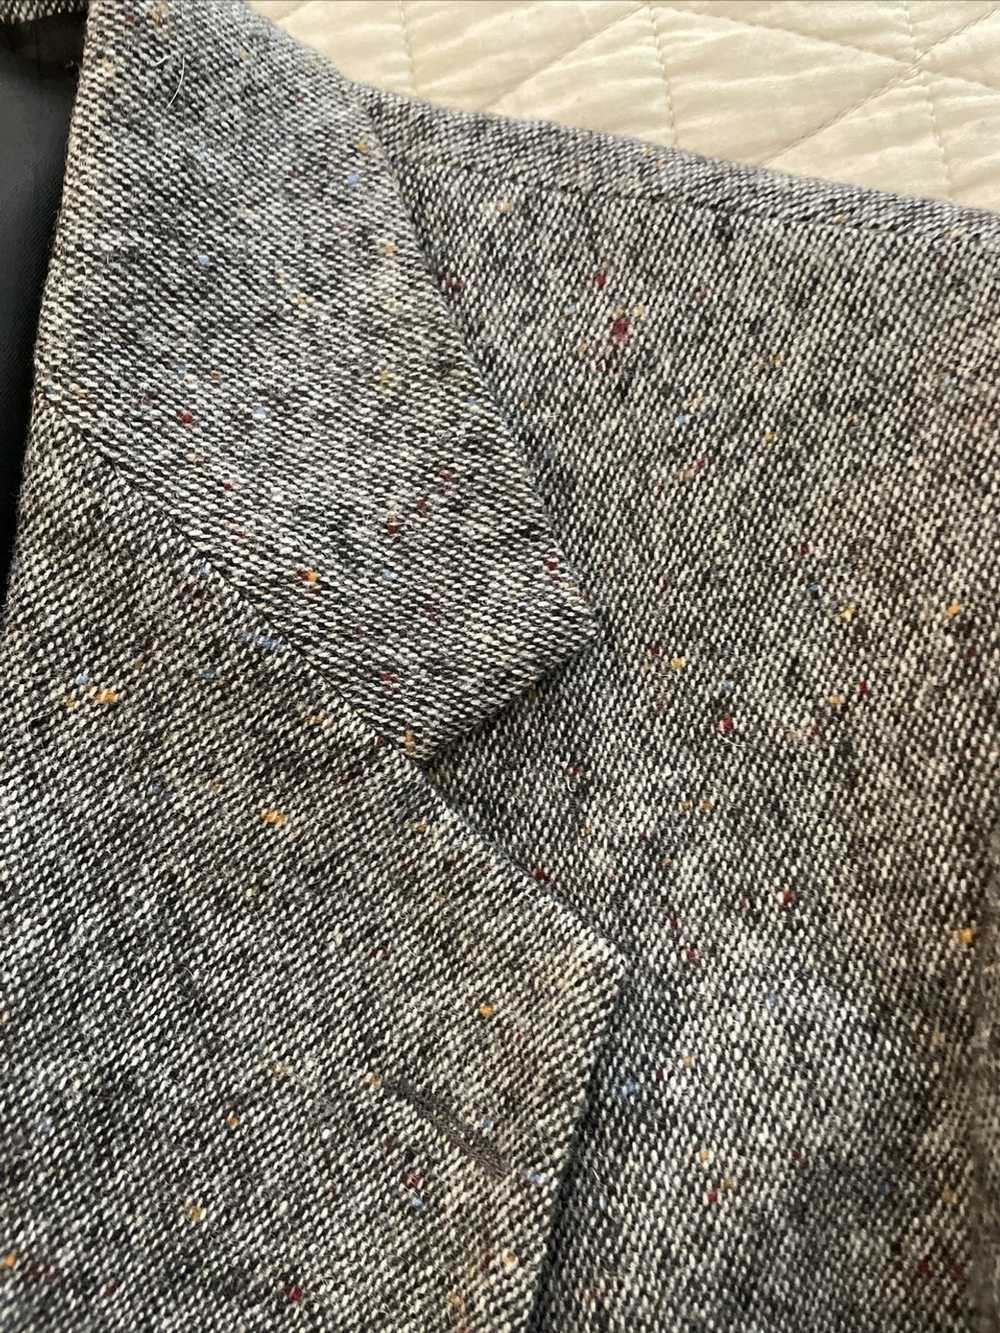 Haggar × Vintage Donegal Tweed Wool Jacket - image 3